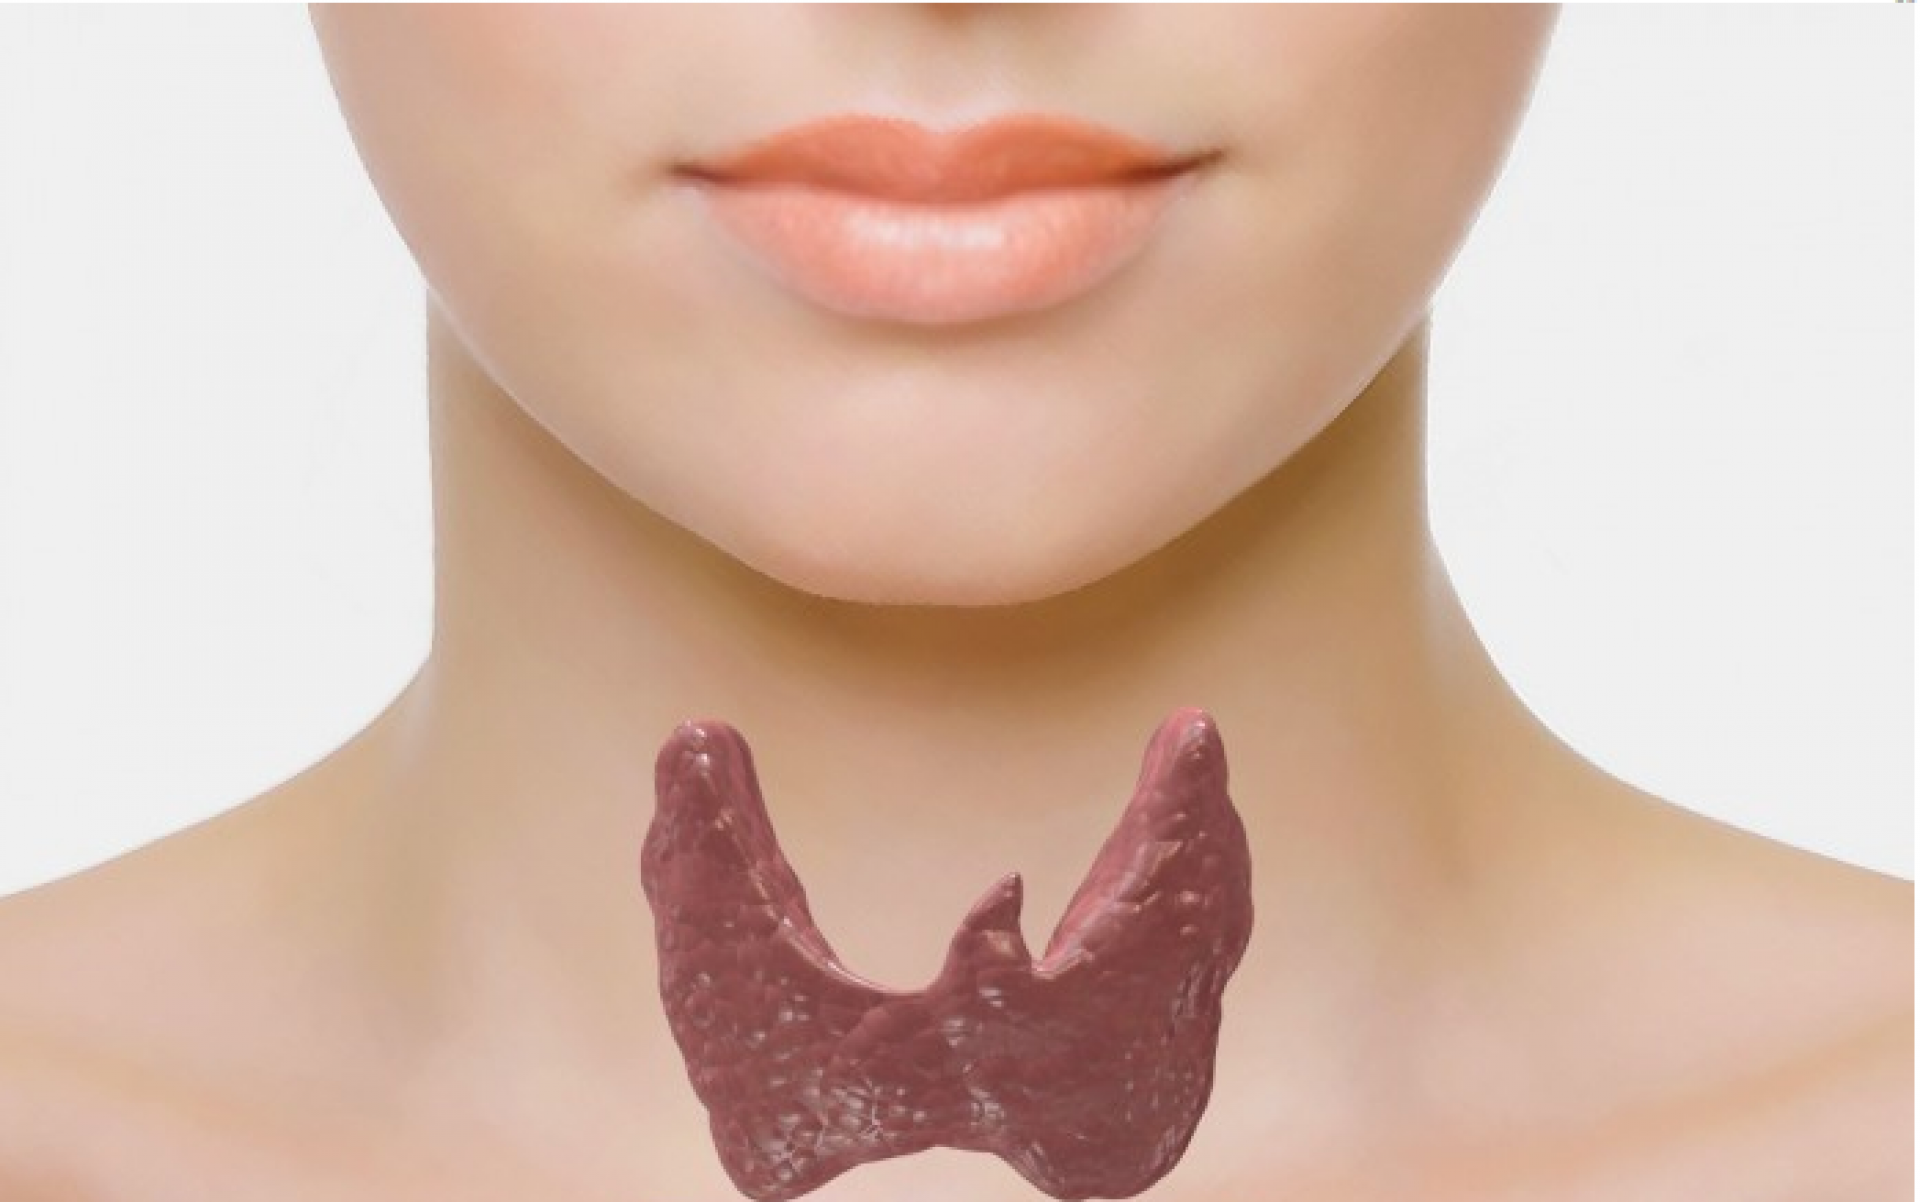 Аденома щитовидной железы. Здоровая щитовидная железа. Щитовидная железа в форме бабочки. Щитовидная железа фото у женщин. Зоб ахан